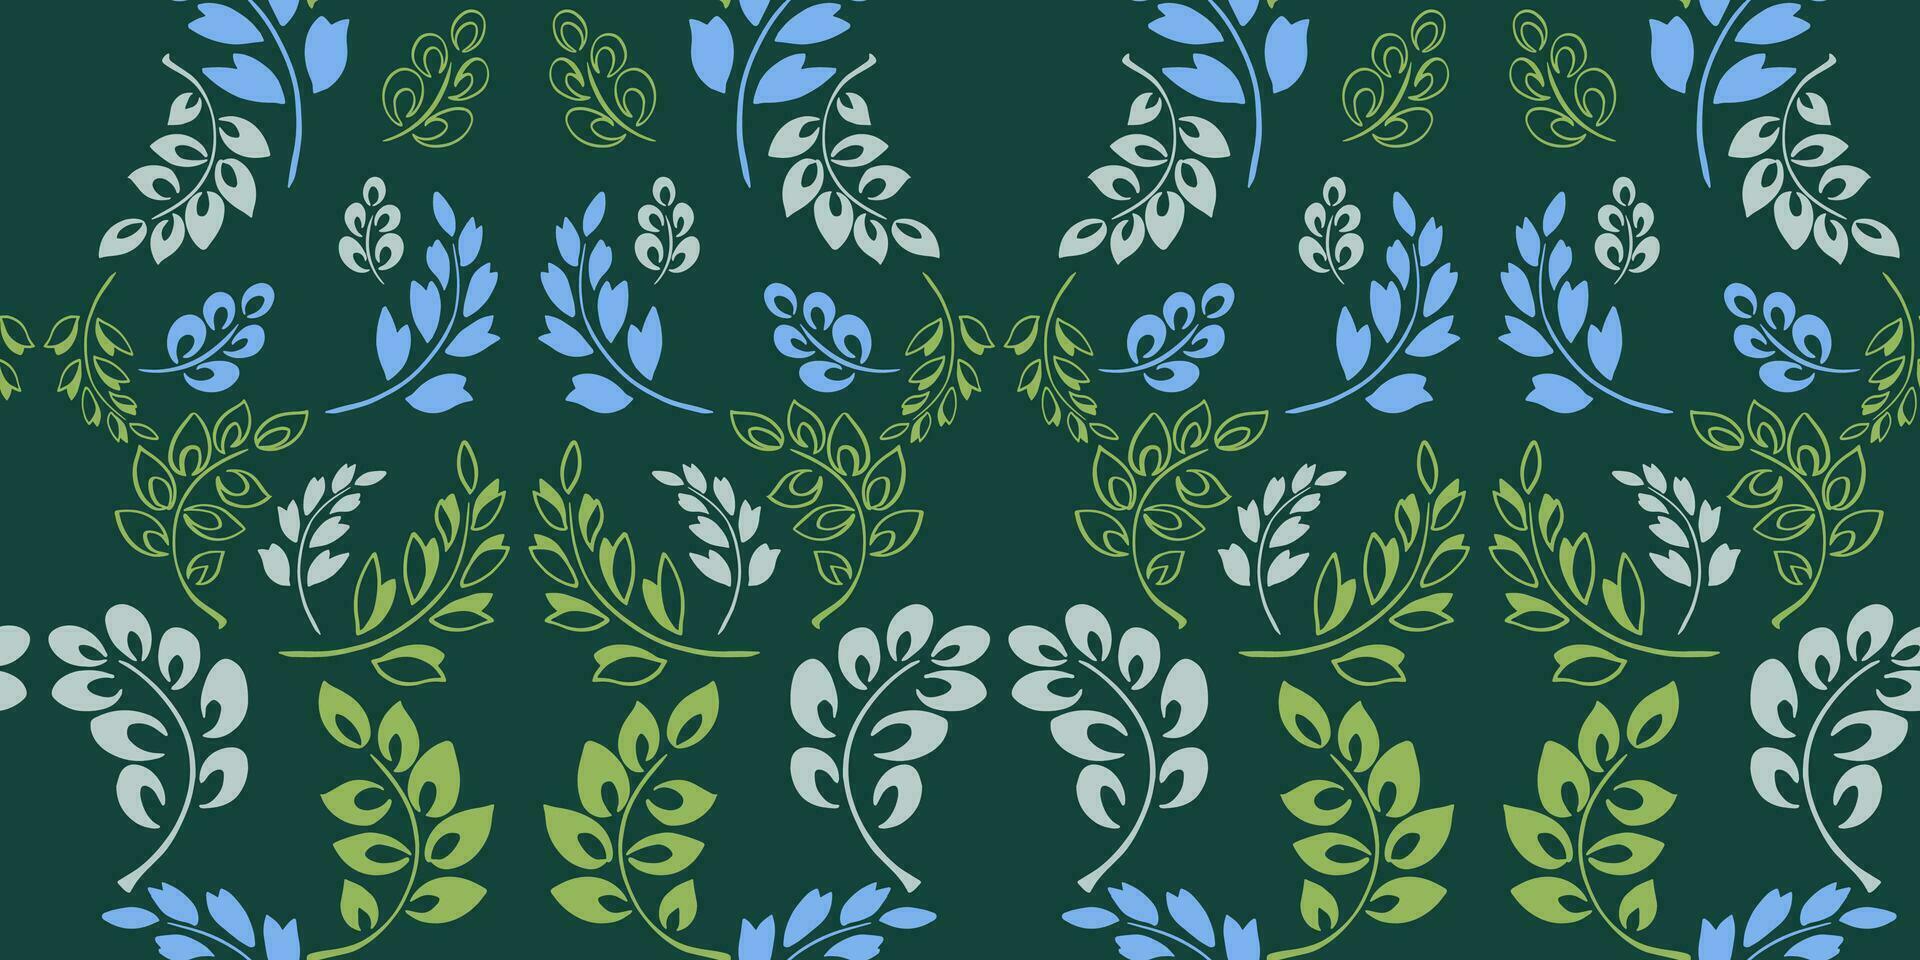 desatado padronizar com vetor mão desenhado galhos folhas. abstrato moderno verde folhas floral Projeto. vetor Projeto enfeite para papel, cobrir, tecido, interior decoração, têxtil, papel de parede